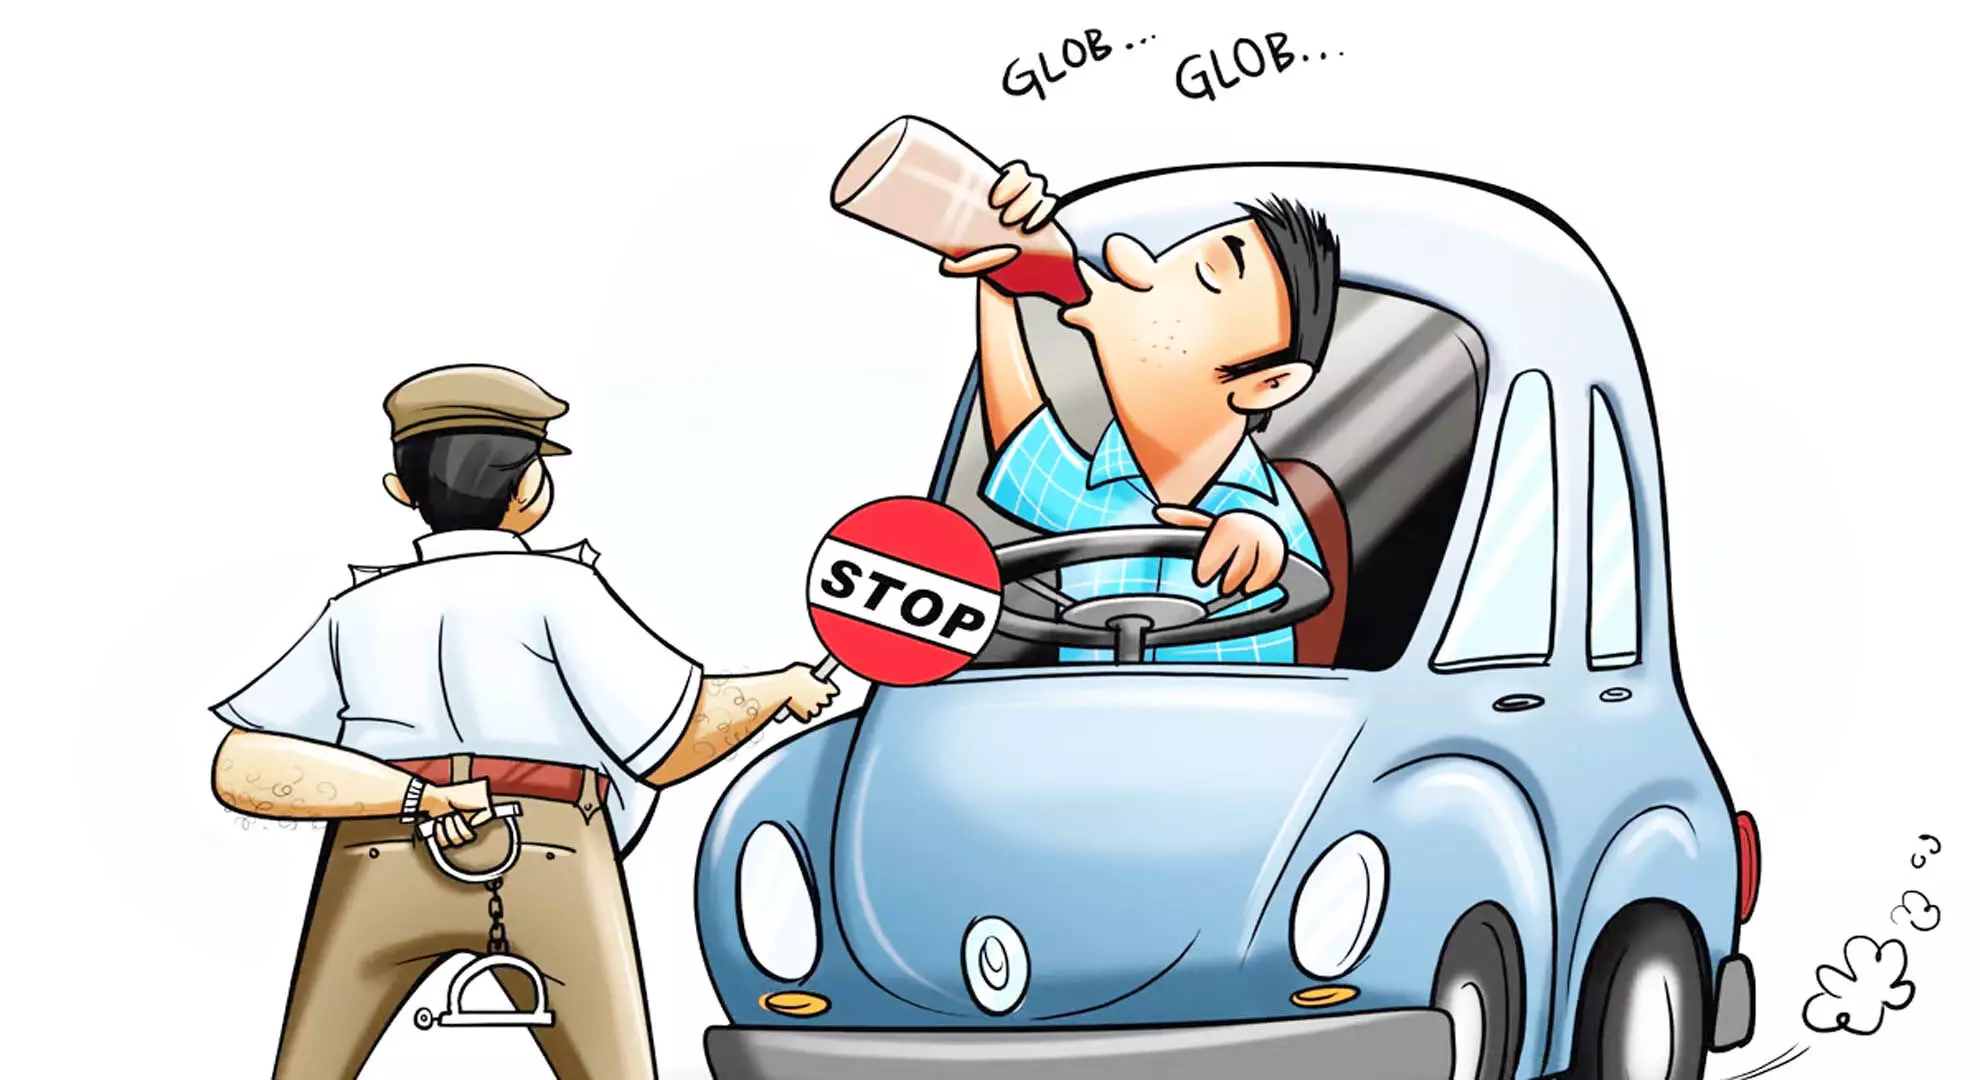 विजयवाड़ा और एनटीआर जिला पुलिस ने नशे में गाड़ी चलाने पर कार्रवाई की